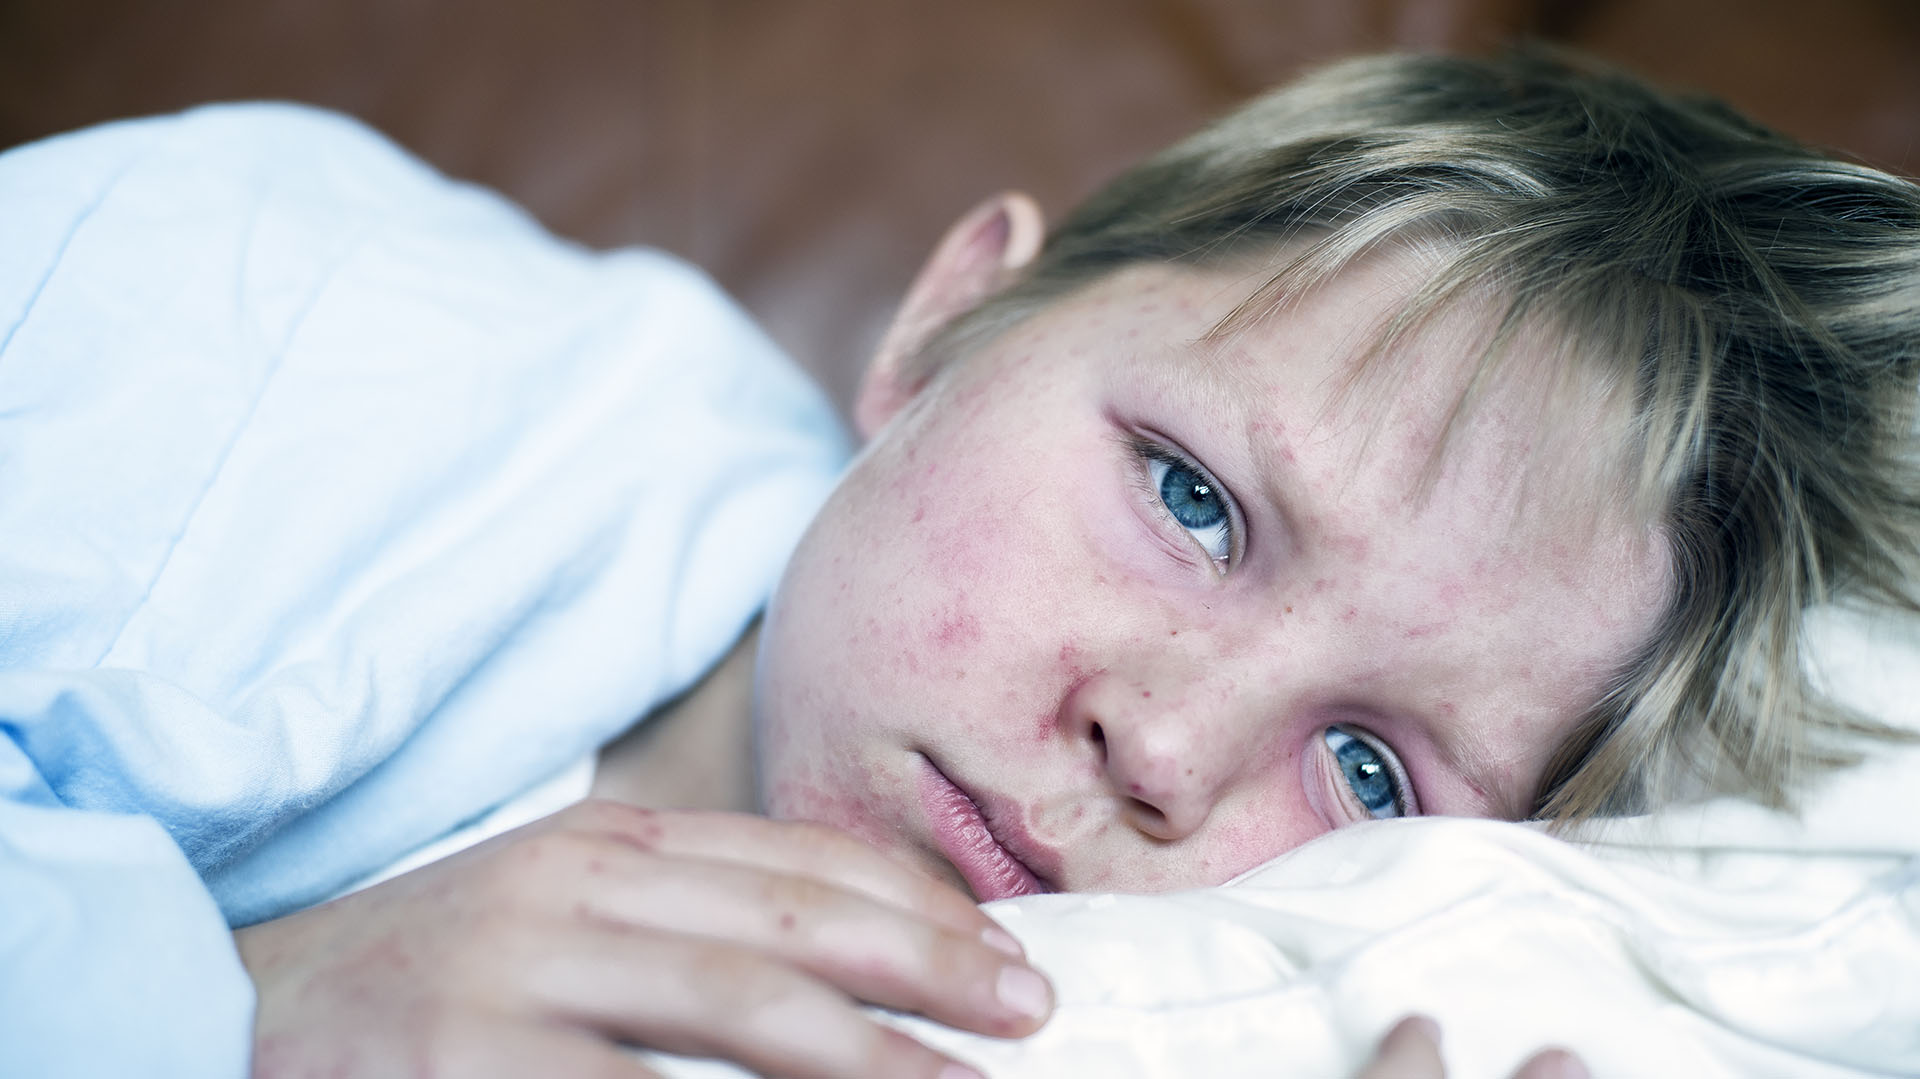 El virus sarampión puede afectar tanto a adultos como a niños. Pero en las infancias puede ser grave e incluso mortal (Getty Images)